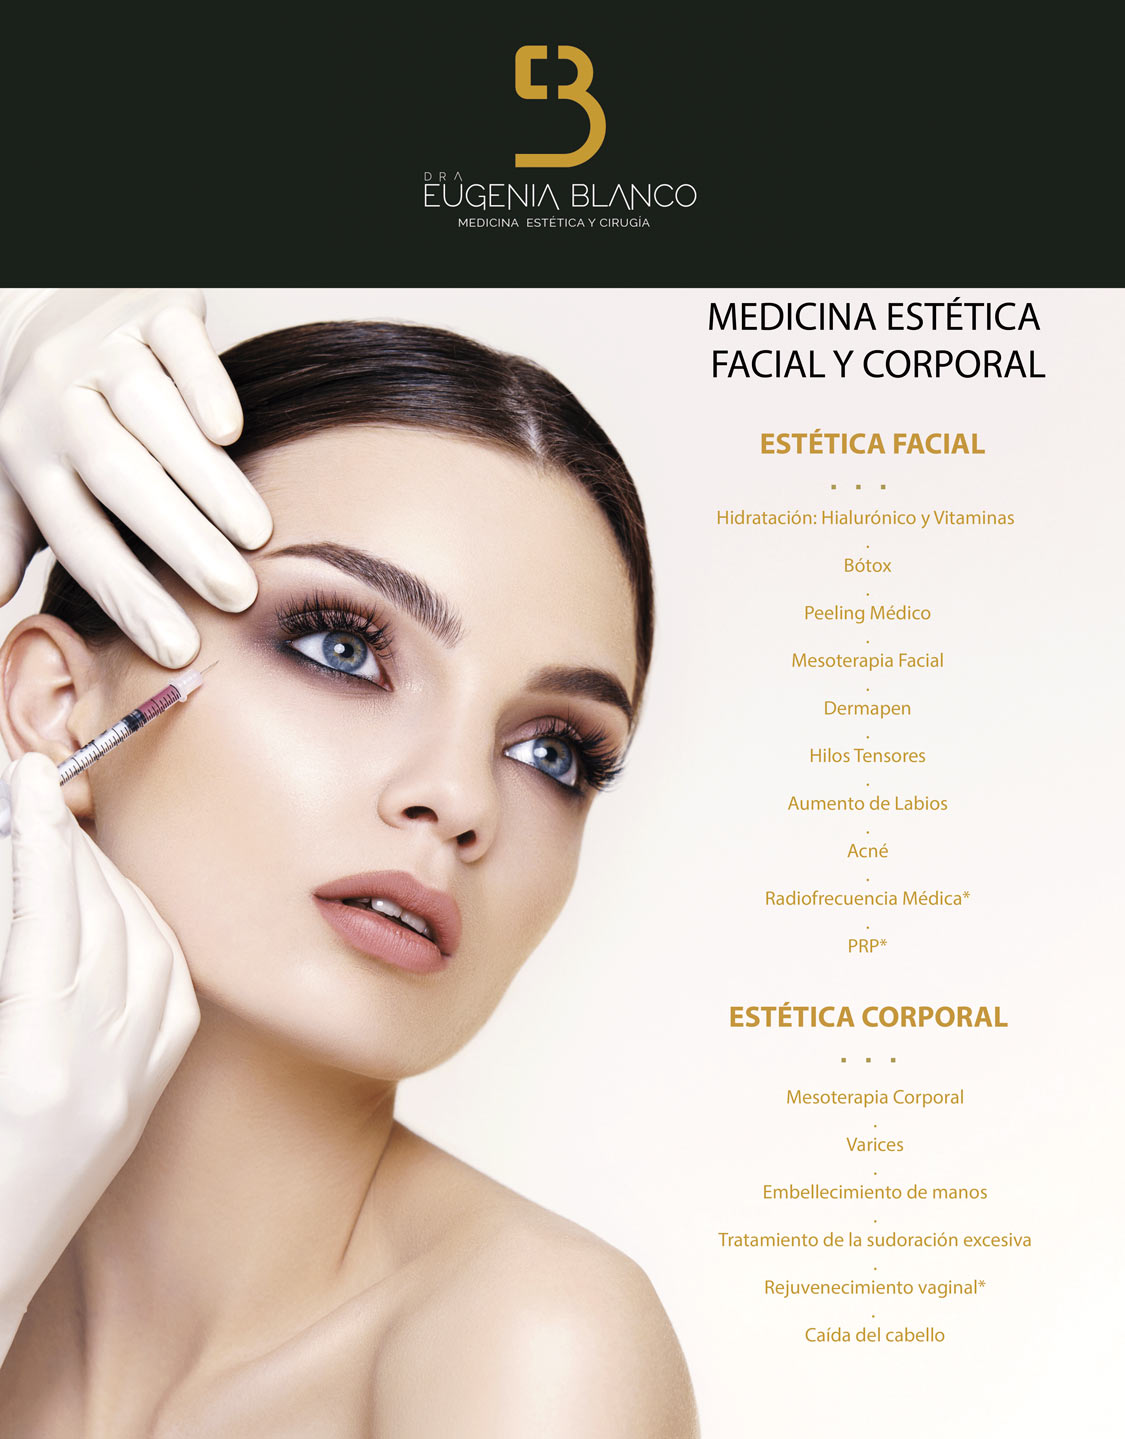 Cirugía estética facial - Serie—Indicaciones: MedlinePlus